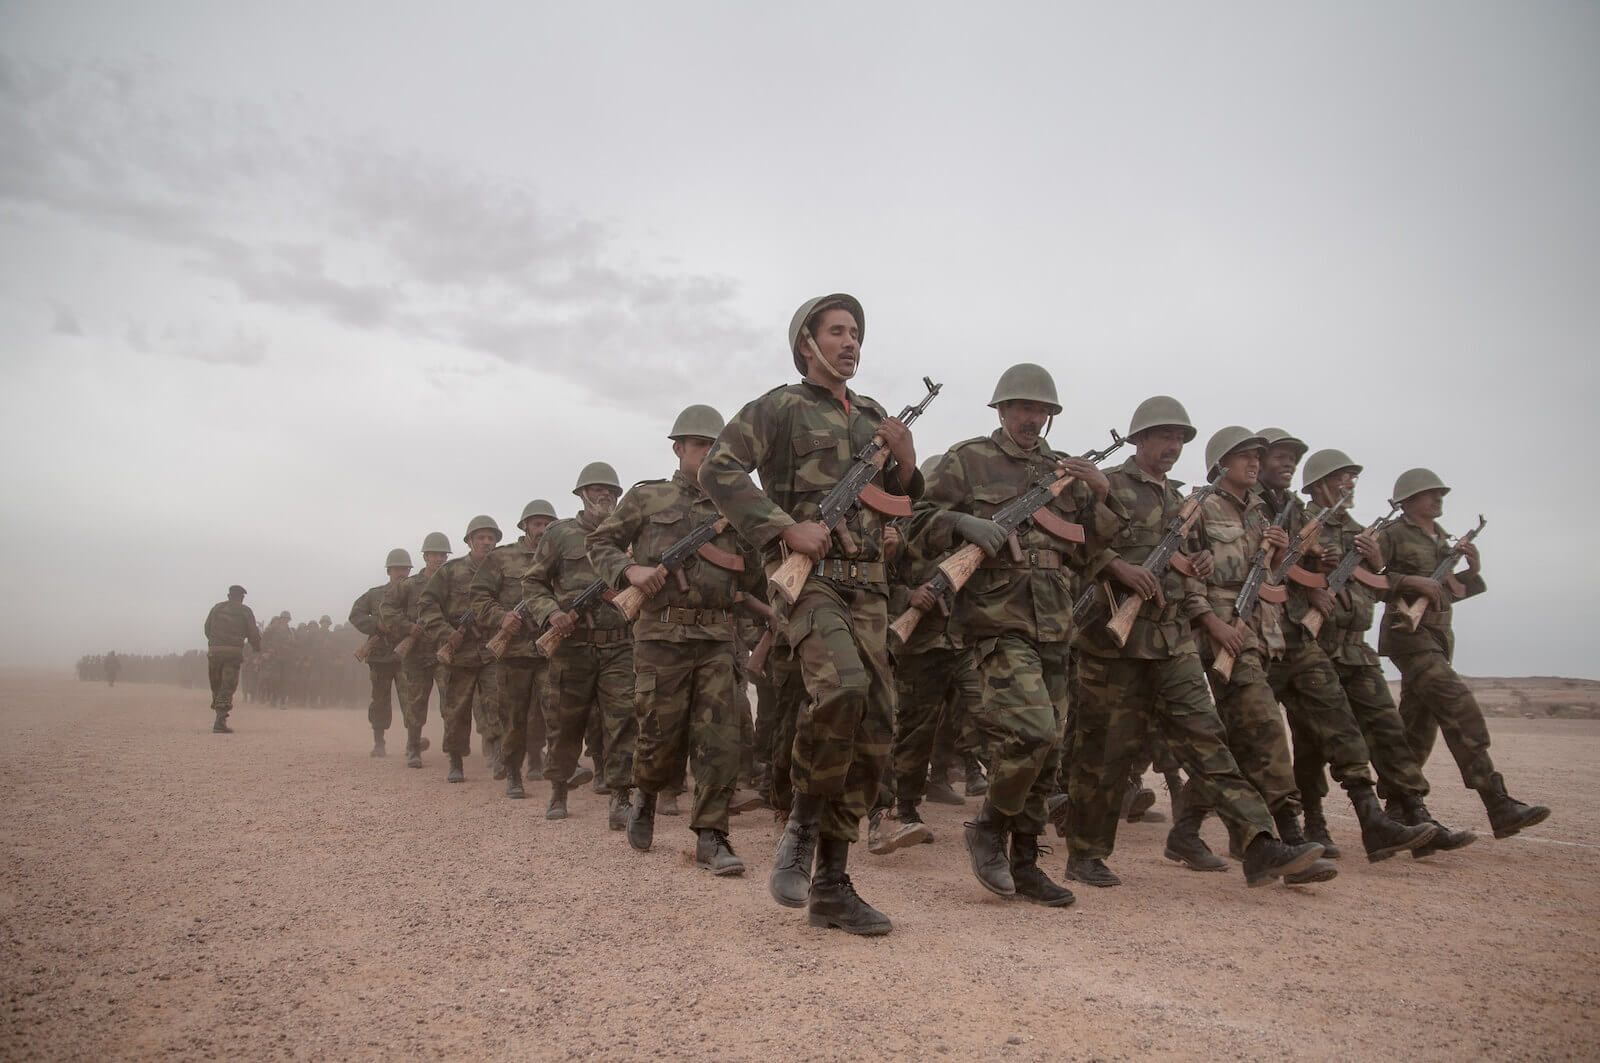 Ejército República Saharaui sáhara occidental Frente Polisario